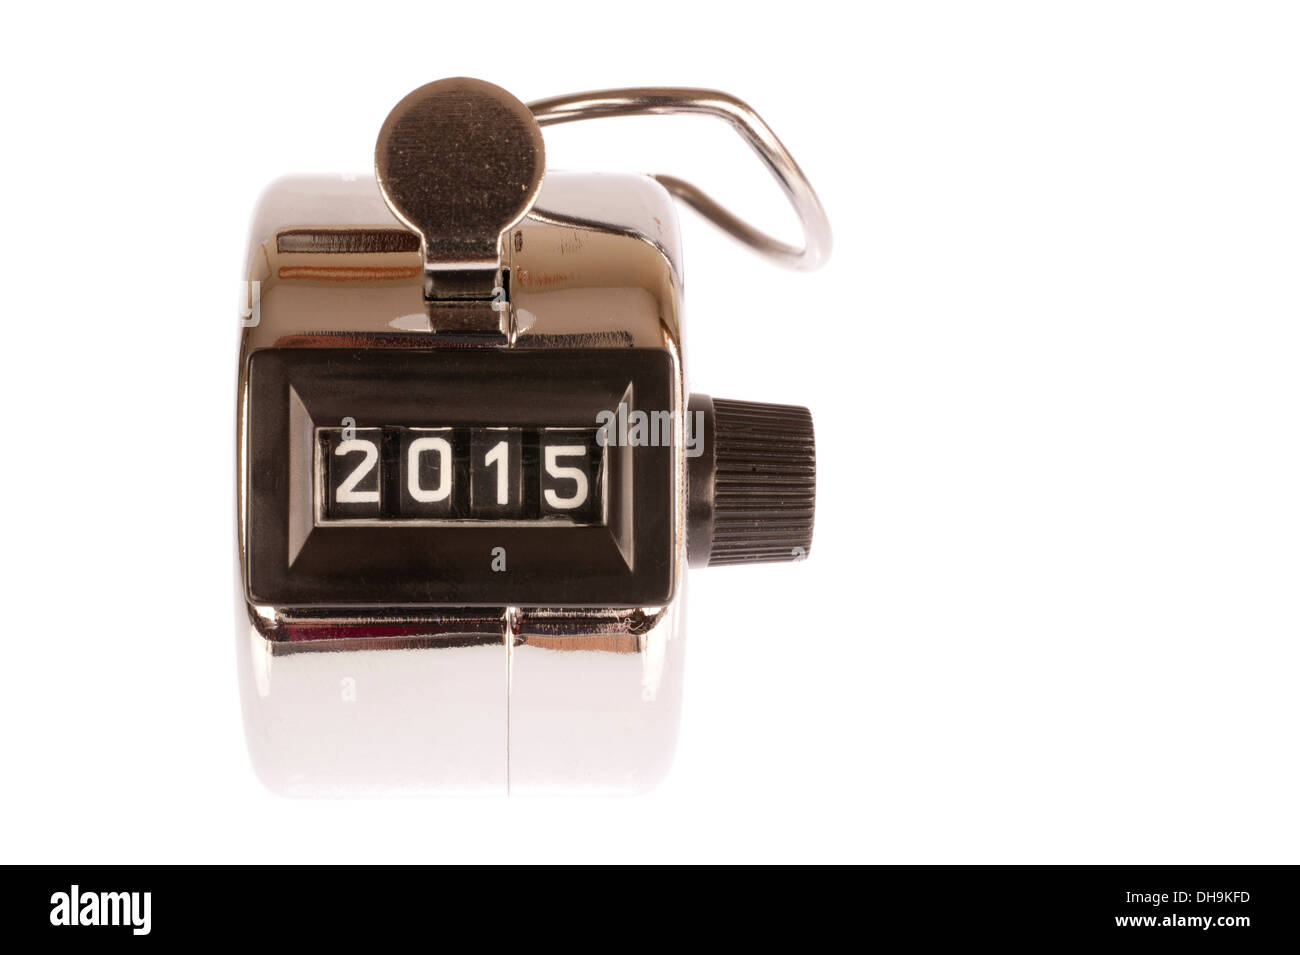 Cromo Podómetro con contador analógico está fijado en el año 2015 Foto de stock